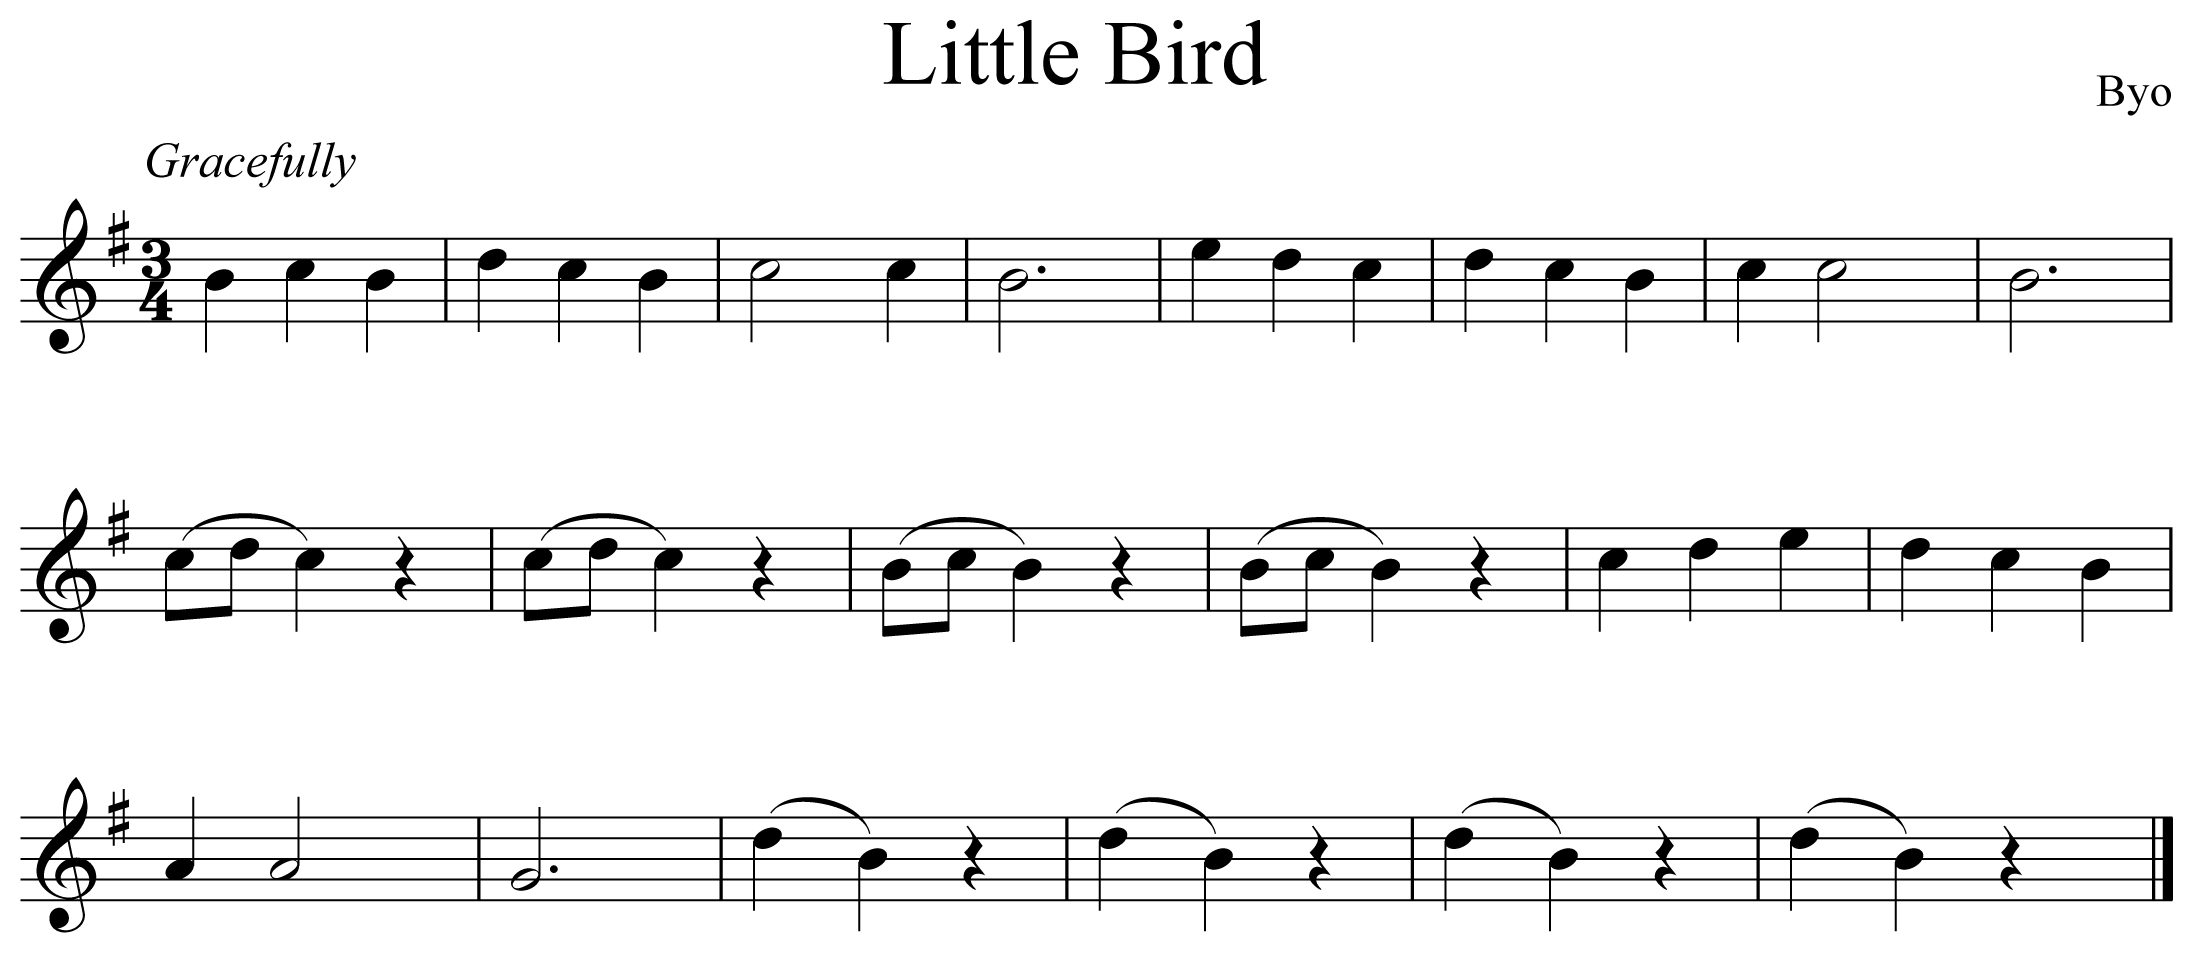 Little Bird Notation Saxophone